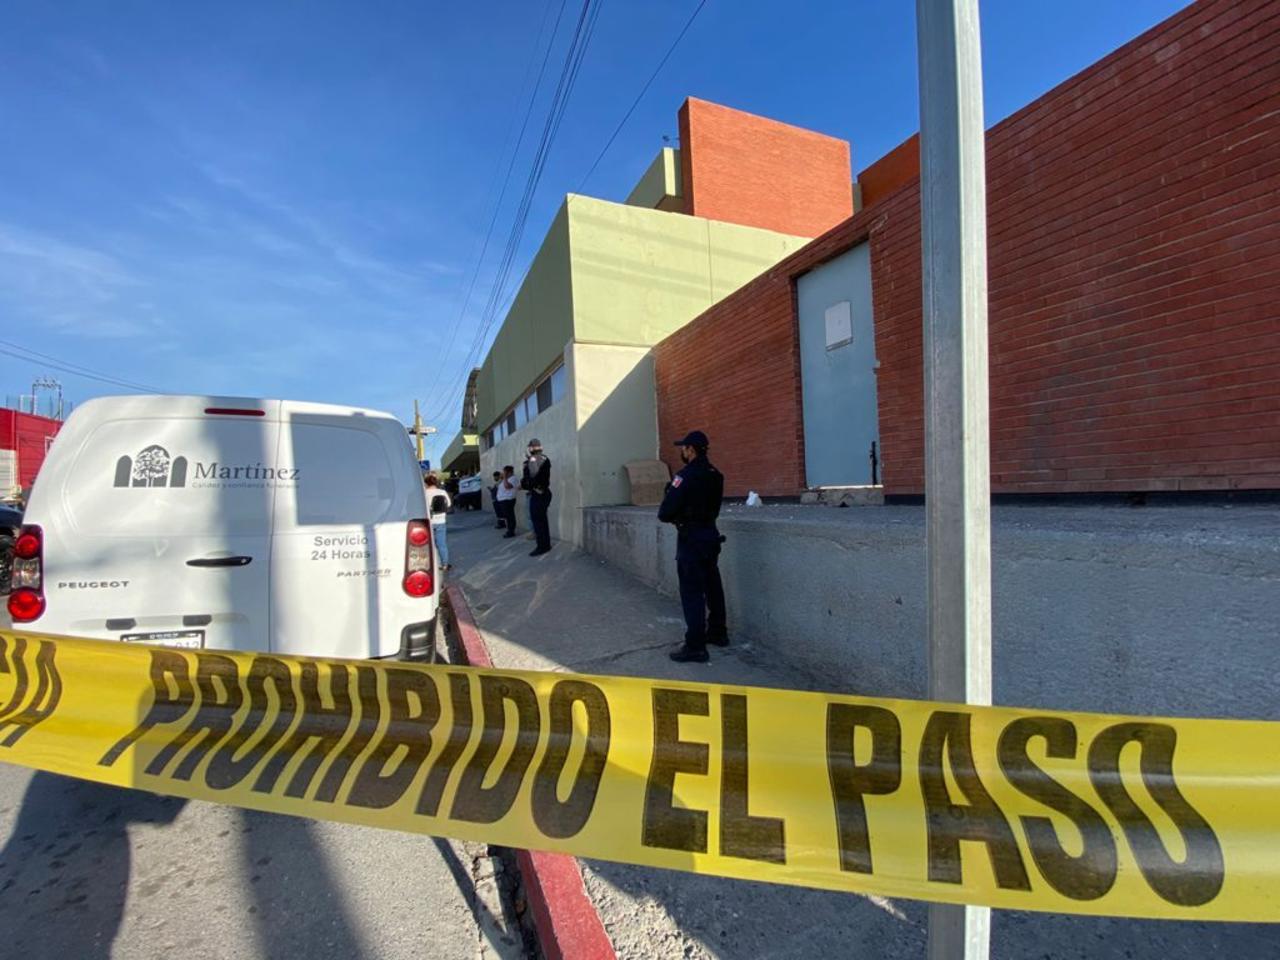 Elementos de la Policía Municipal de Saltillo acordonaron y cerraron la circulación de la bulevar Humberto Hinojosa, misma en la que se ubica la entrada al área de urgencias del nosocomio.

